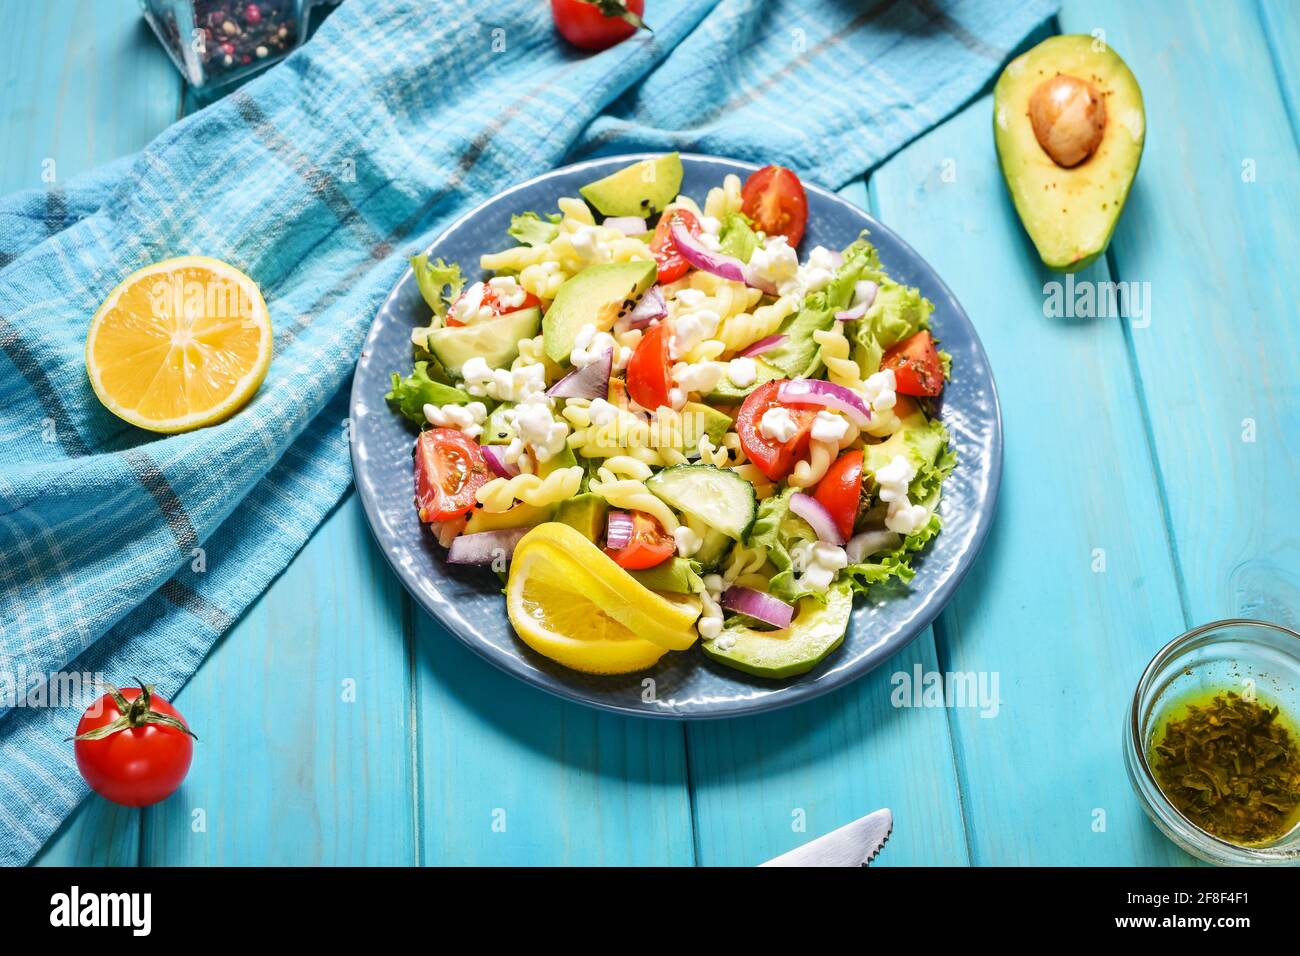 Pranzo vegetariano sano - insalata di pasta con verdure fresche, avocado e feta su sfondo di legno blu Foto Stock